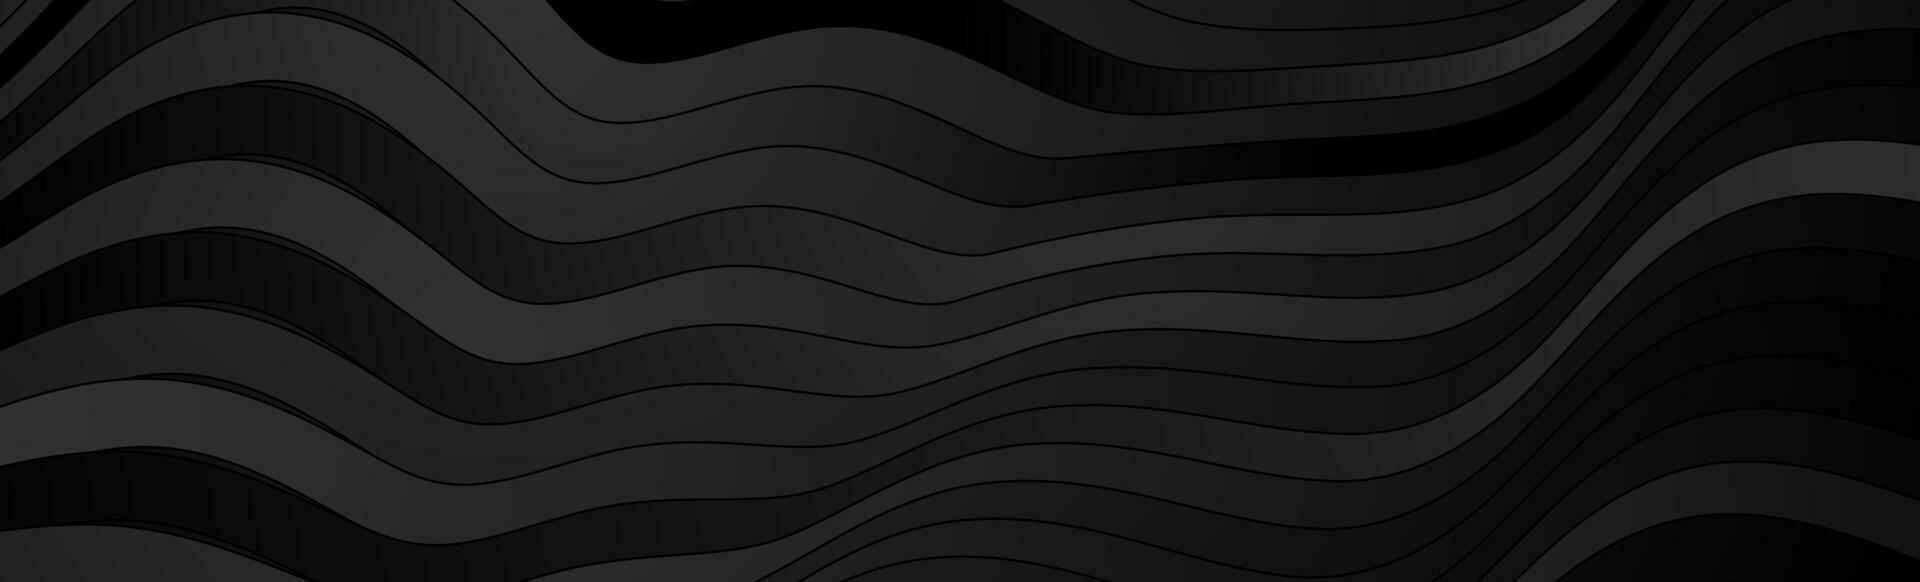 noir ondulé rayures abstrait La technologie géométrique Contexte vecteur